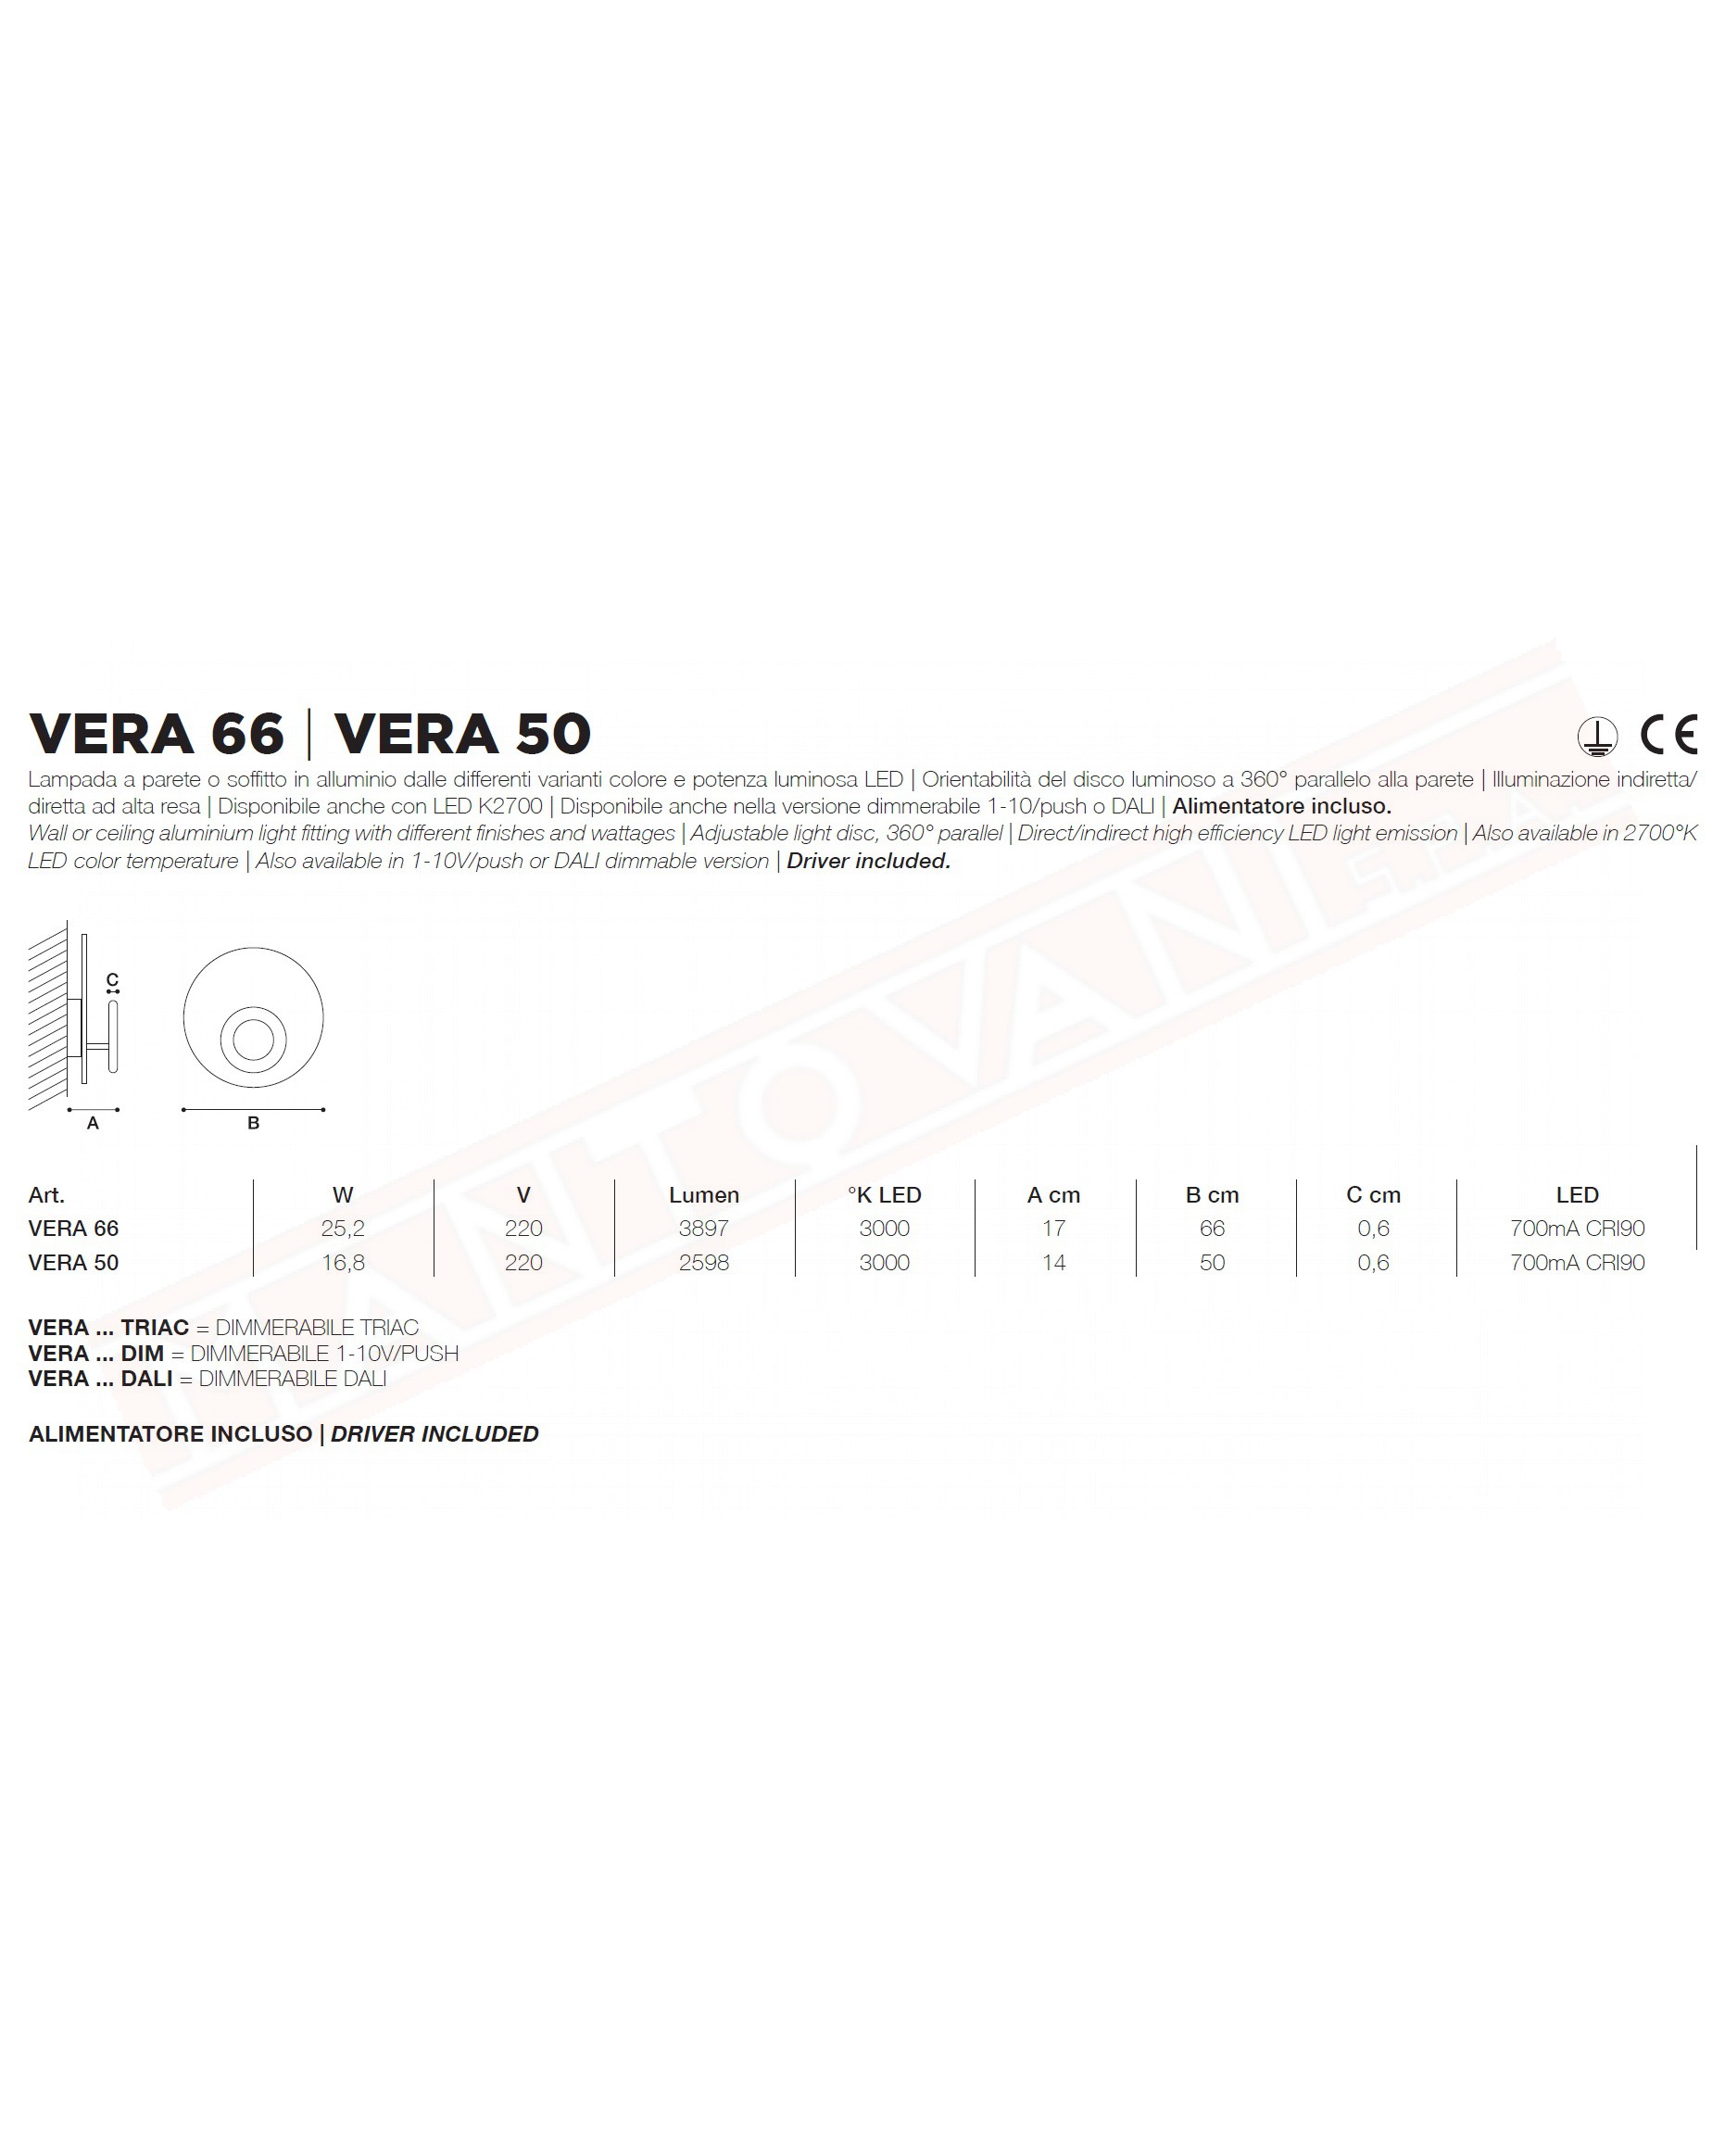 Icone Vera 50 applique foglia rame con anello nero a led 16.8w 2598 lm 3000k diametro 50 sp.14